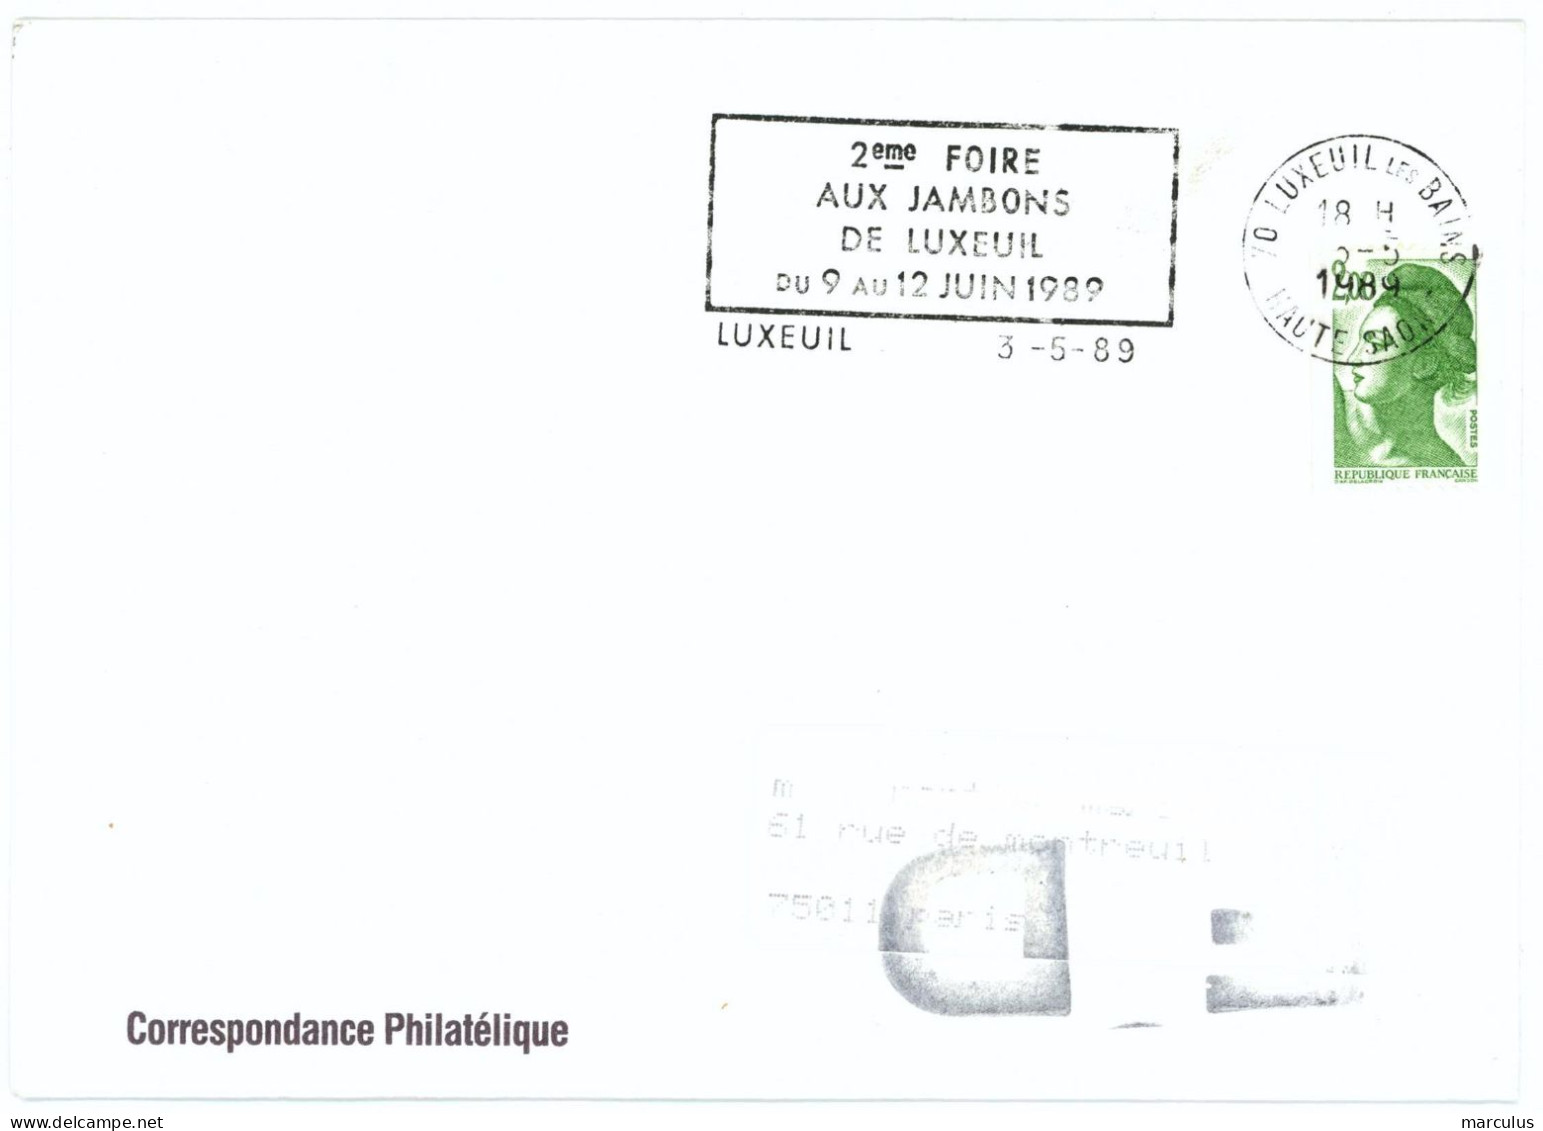 70 LUXEUIL Les BAINS HAUTE SAONE 1989 : 2eme FOIRE AUX JAMBONS ... - Mechanical Postmarks (Advertisement)